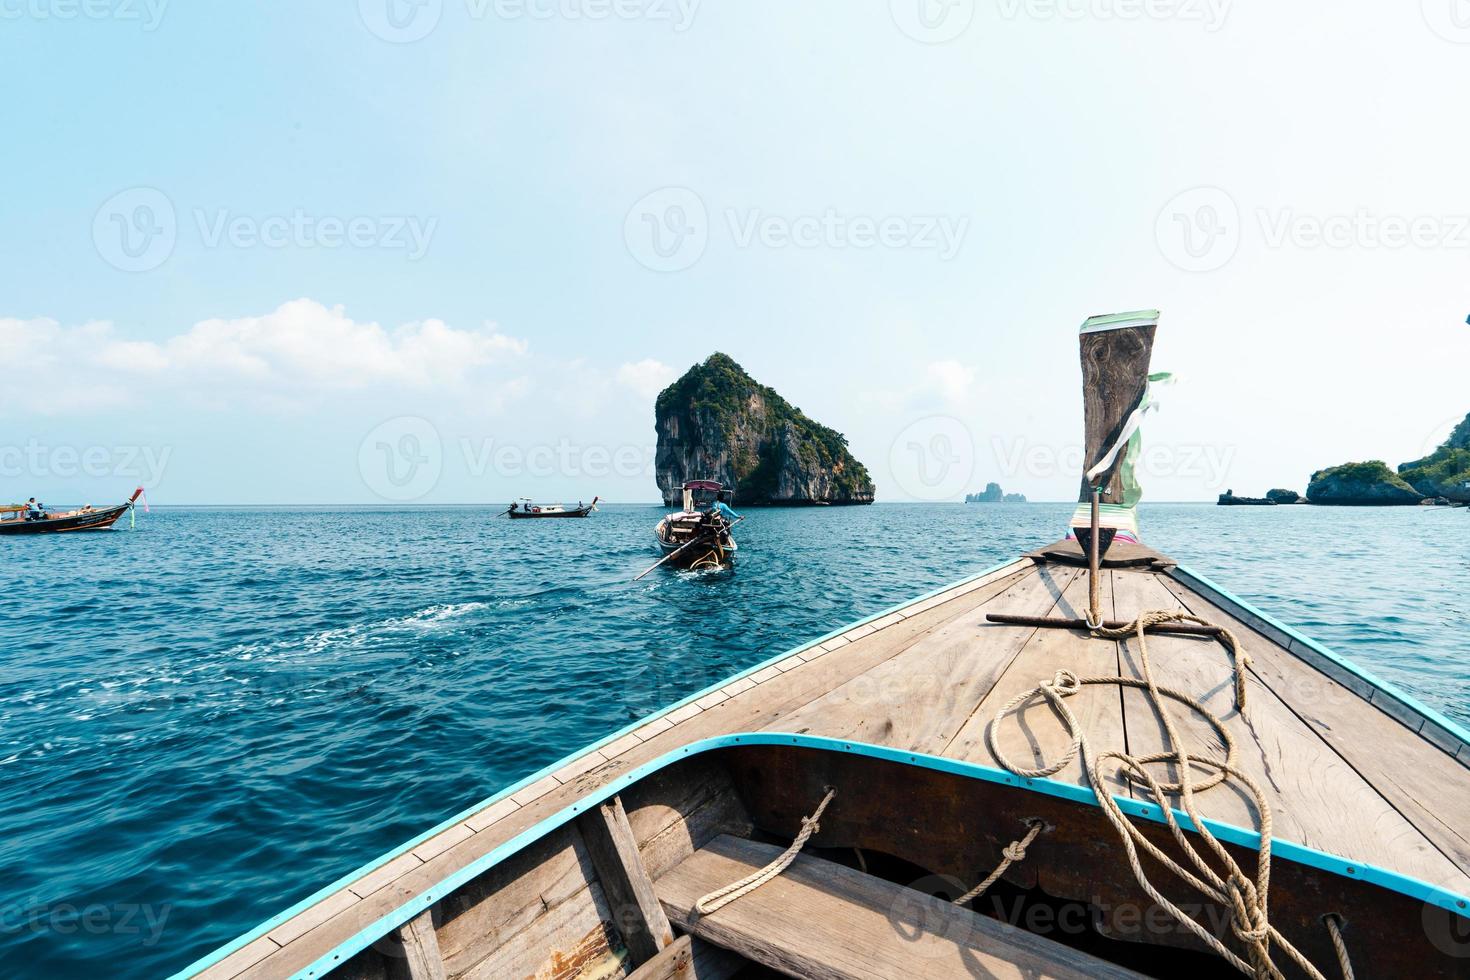 excursions en bateau sur les mers et les îles, voyages en bateau à longue queue photo